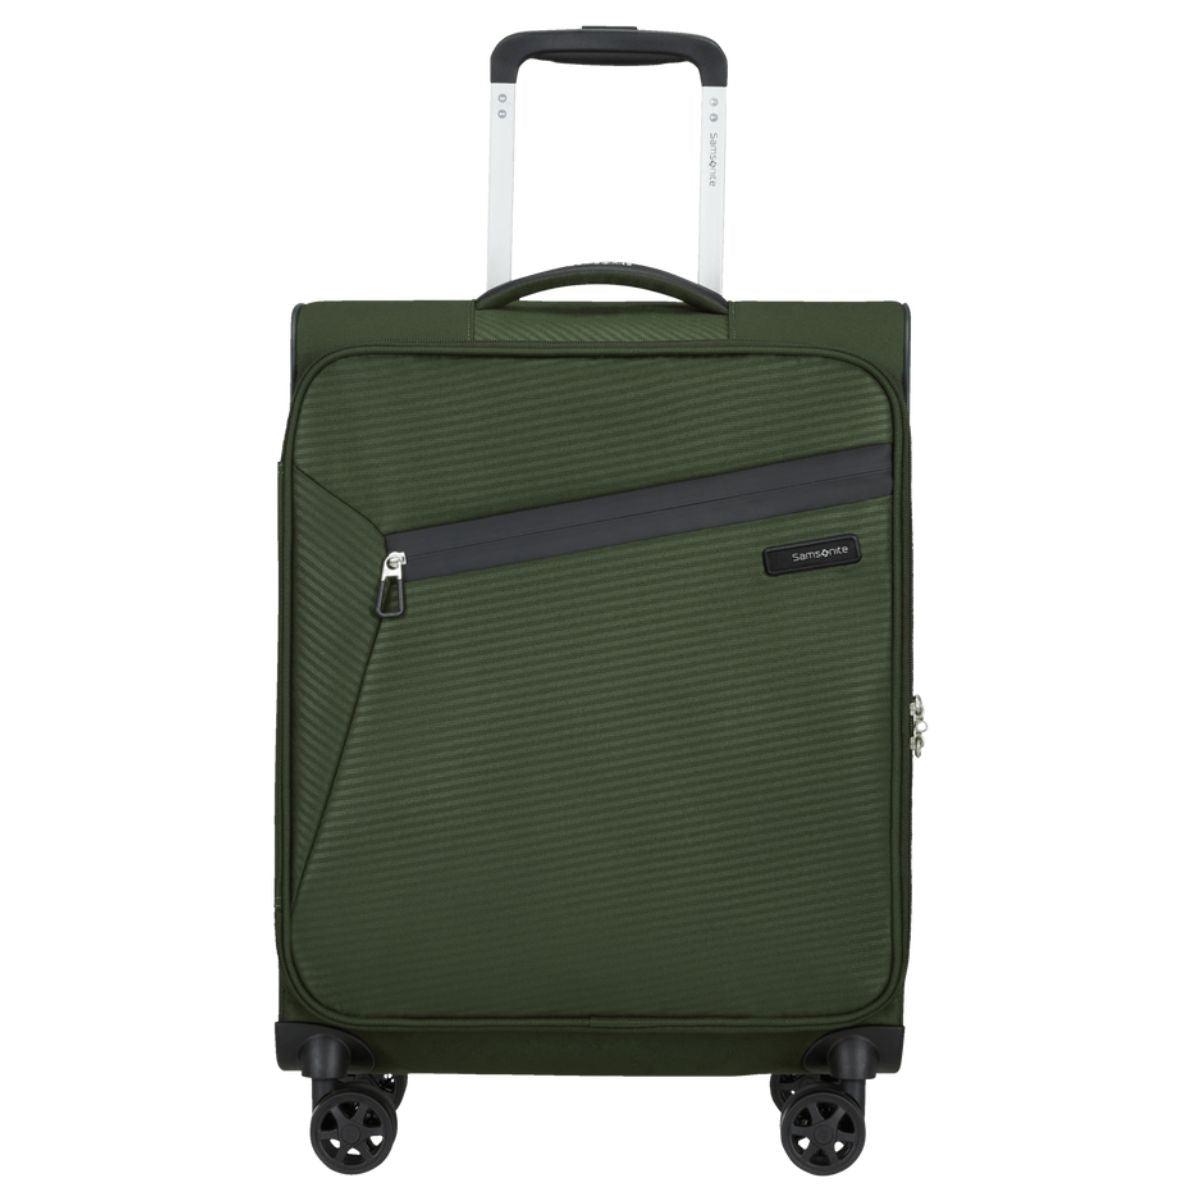 Voorkant Samsonite Litebeam handbagage donkergroen #kleur_donker-groen